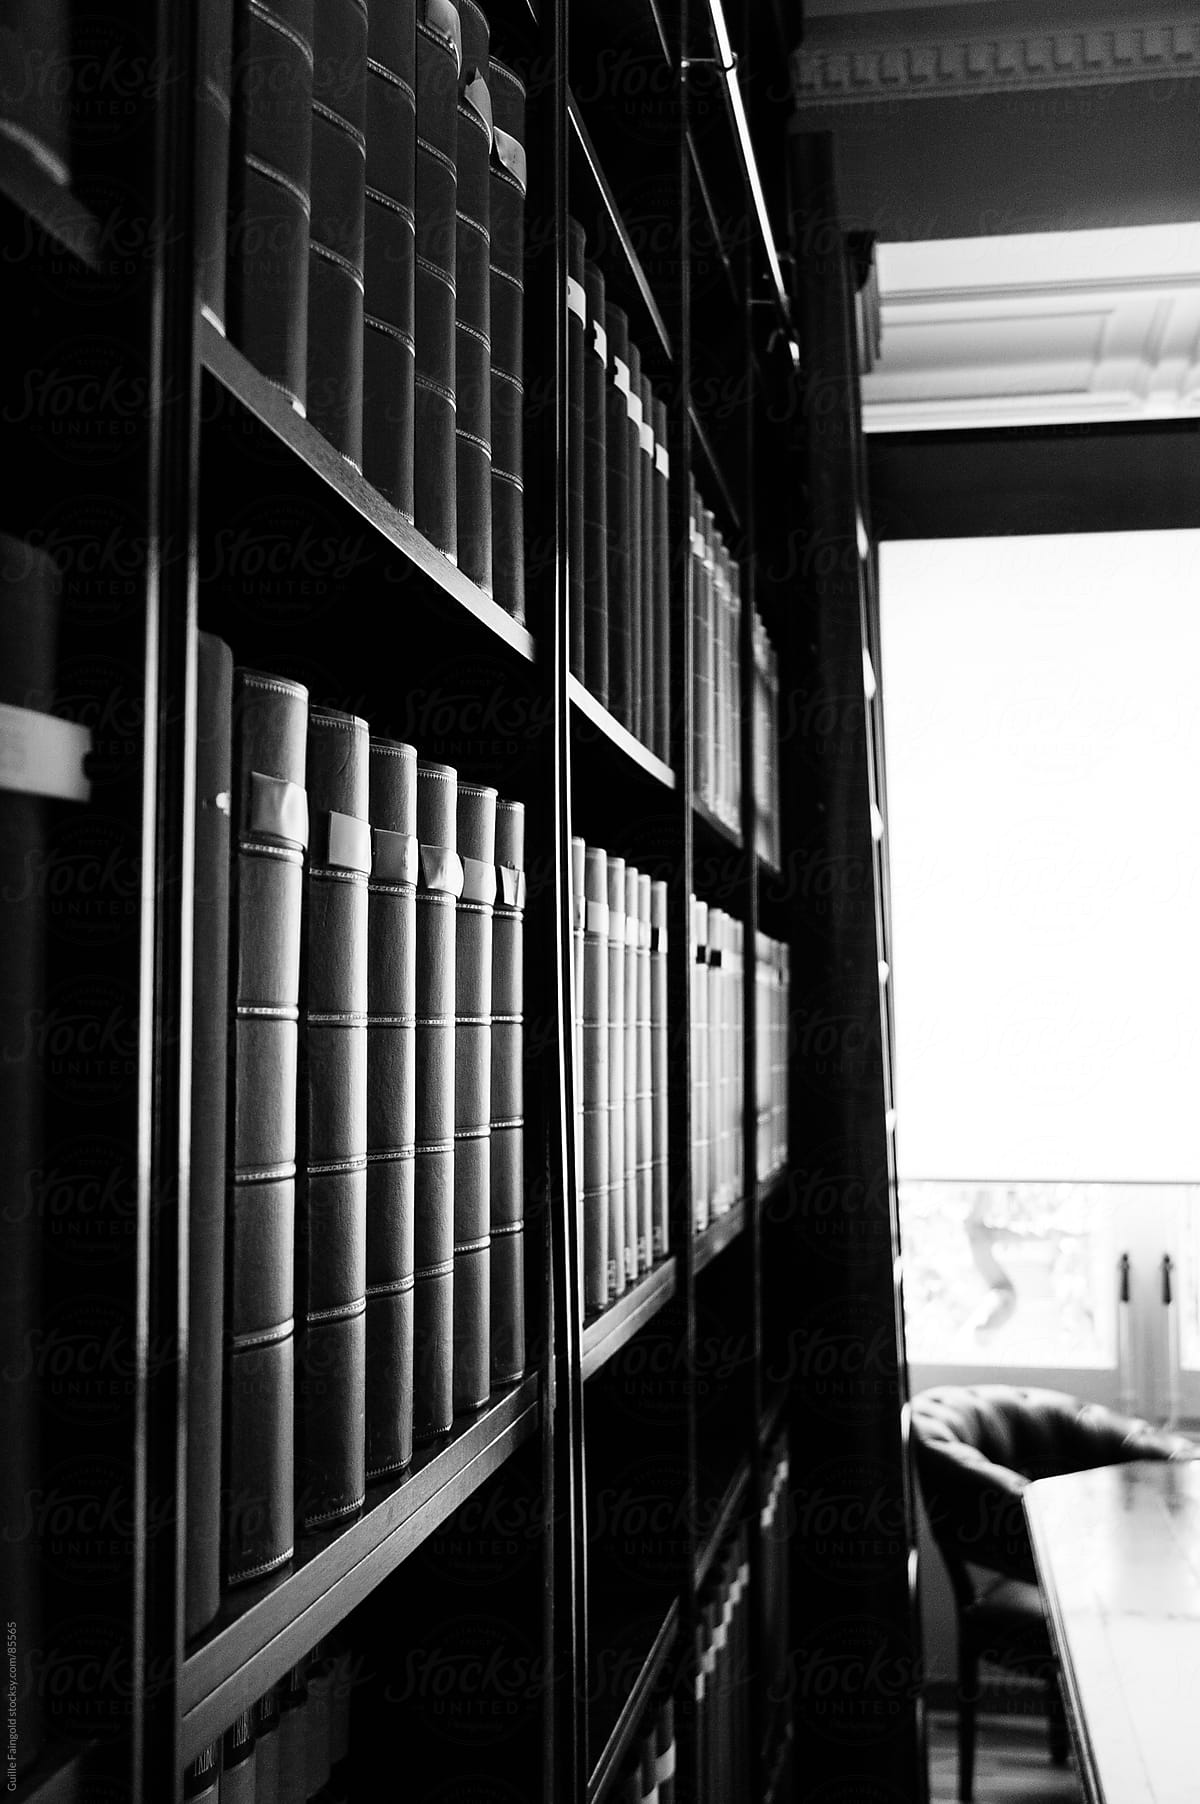 Bookshelves in library